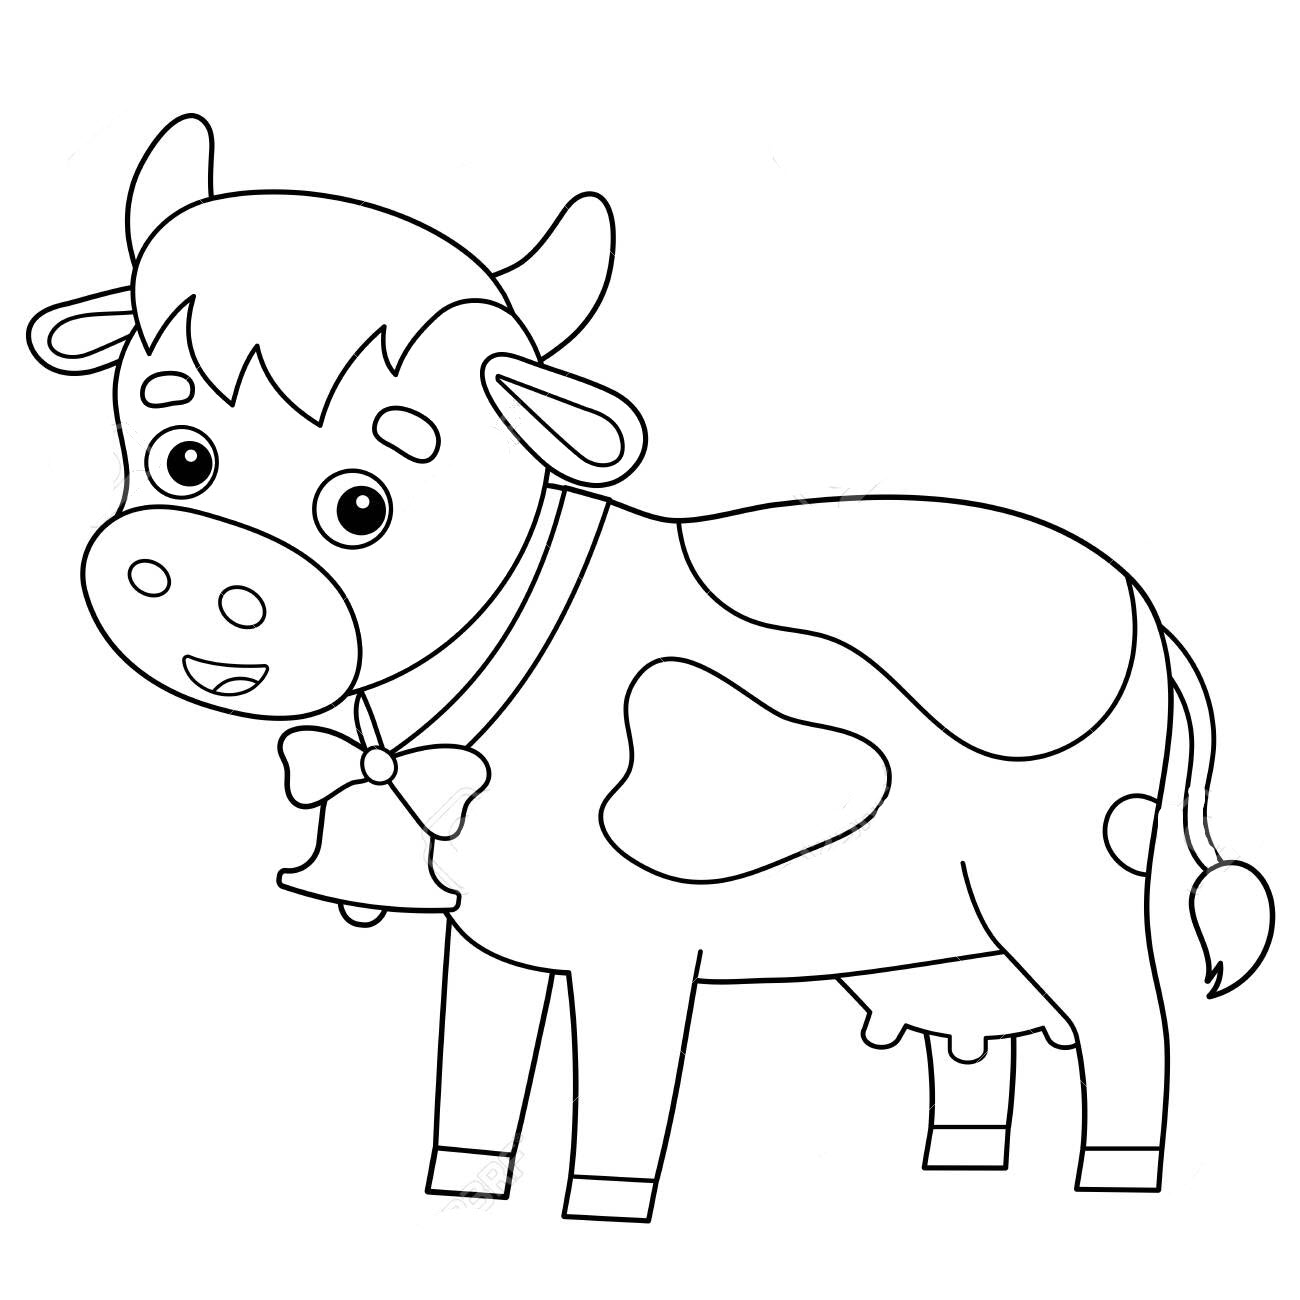 Tranh tô màu con bò hoạt hình